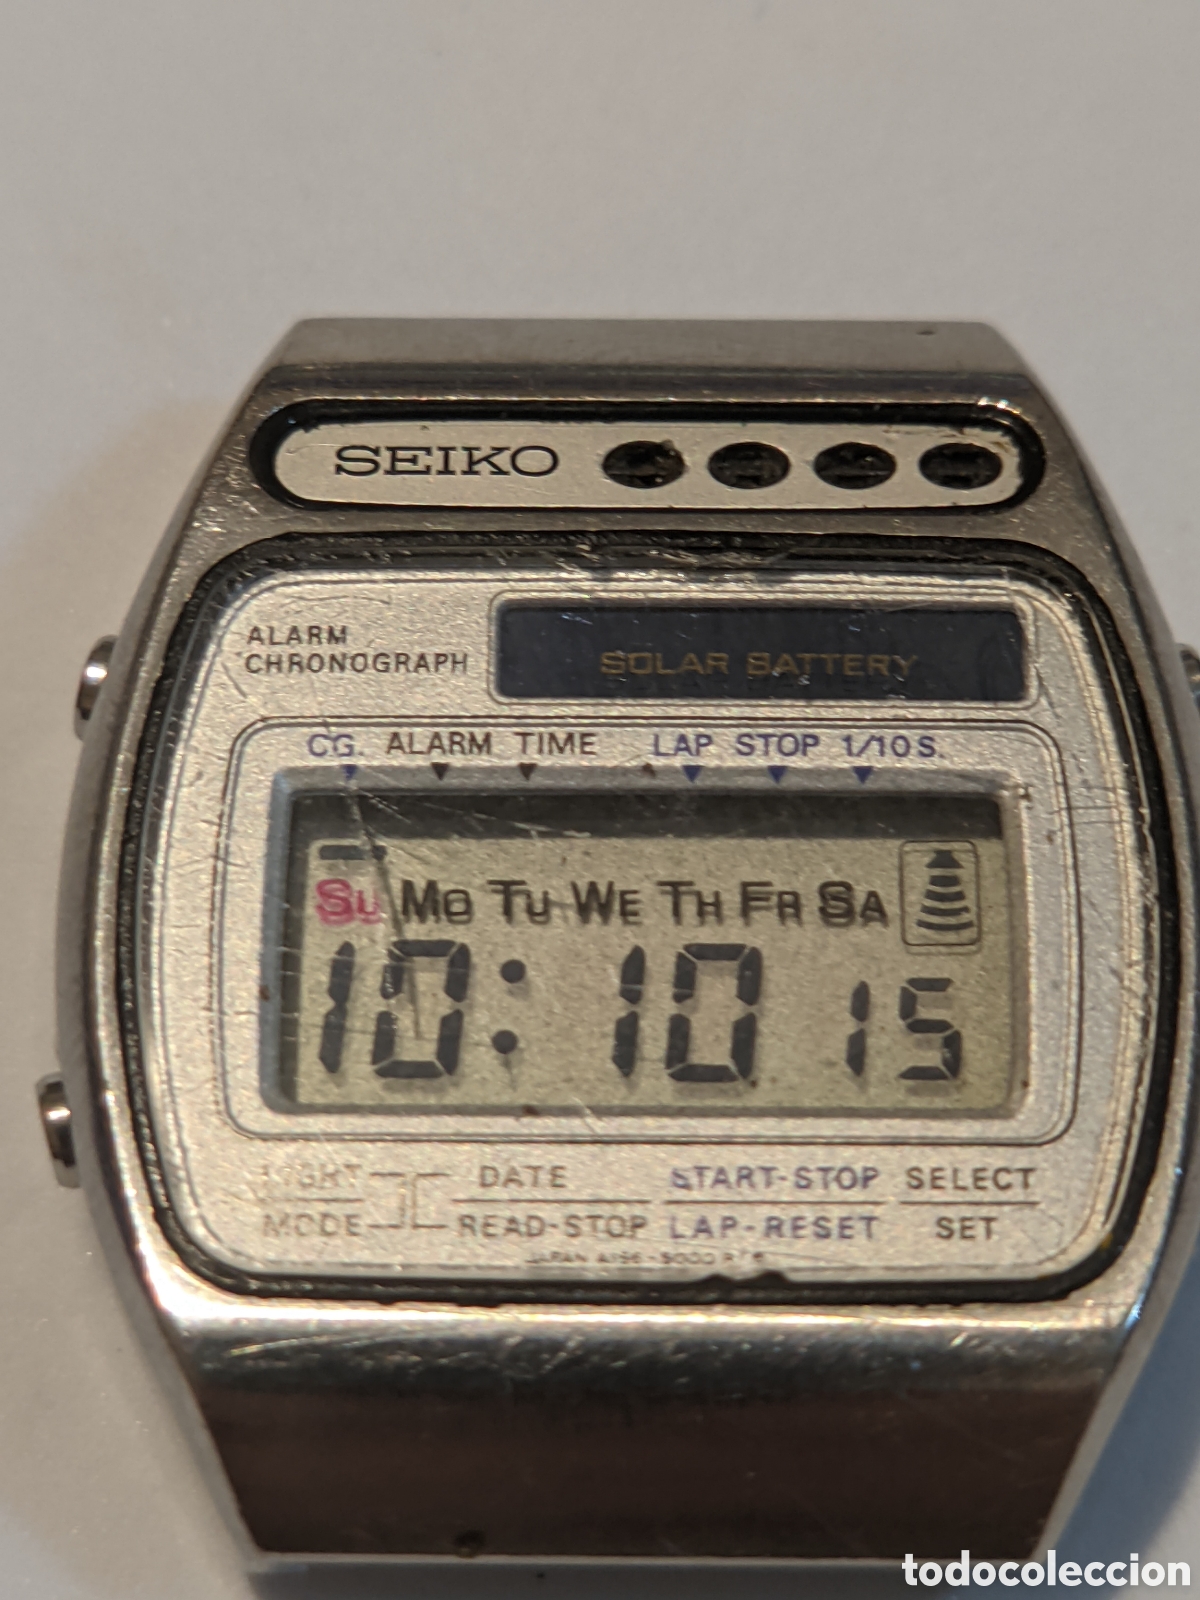 seiko a156-5000 - Buy Seiko watches on todocoleccion